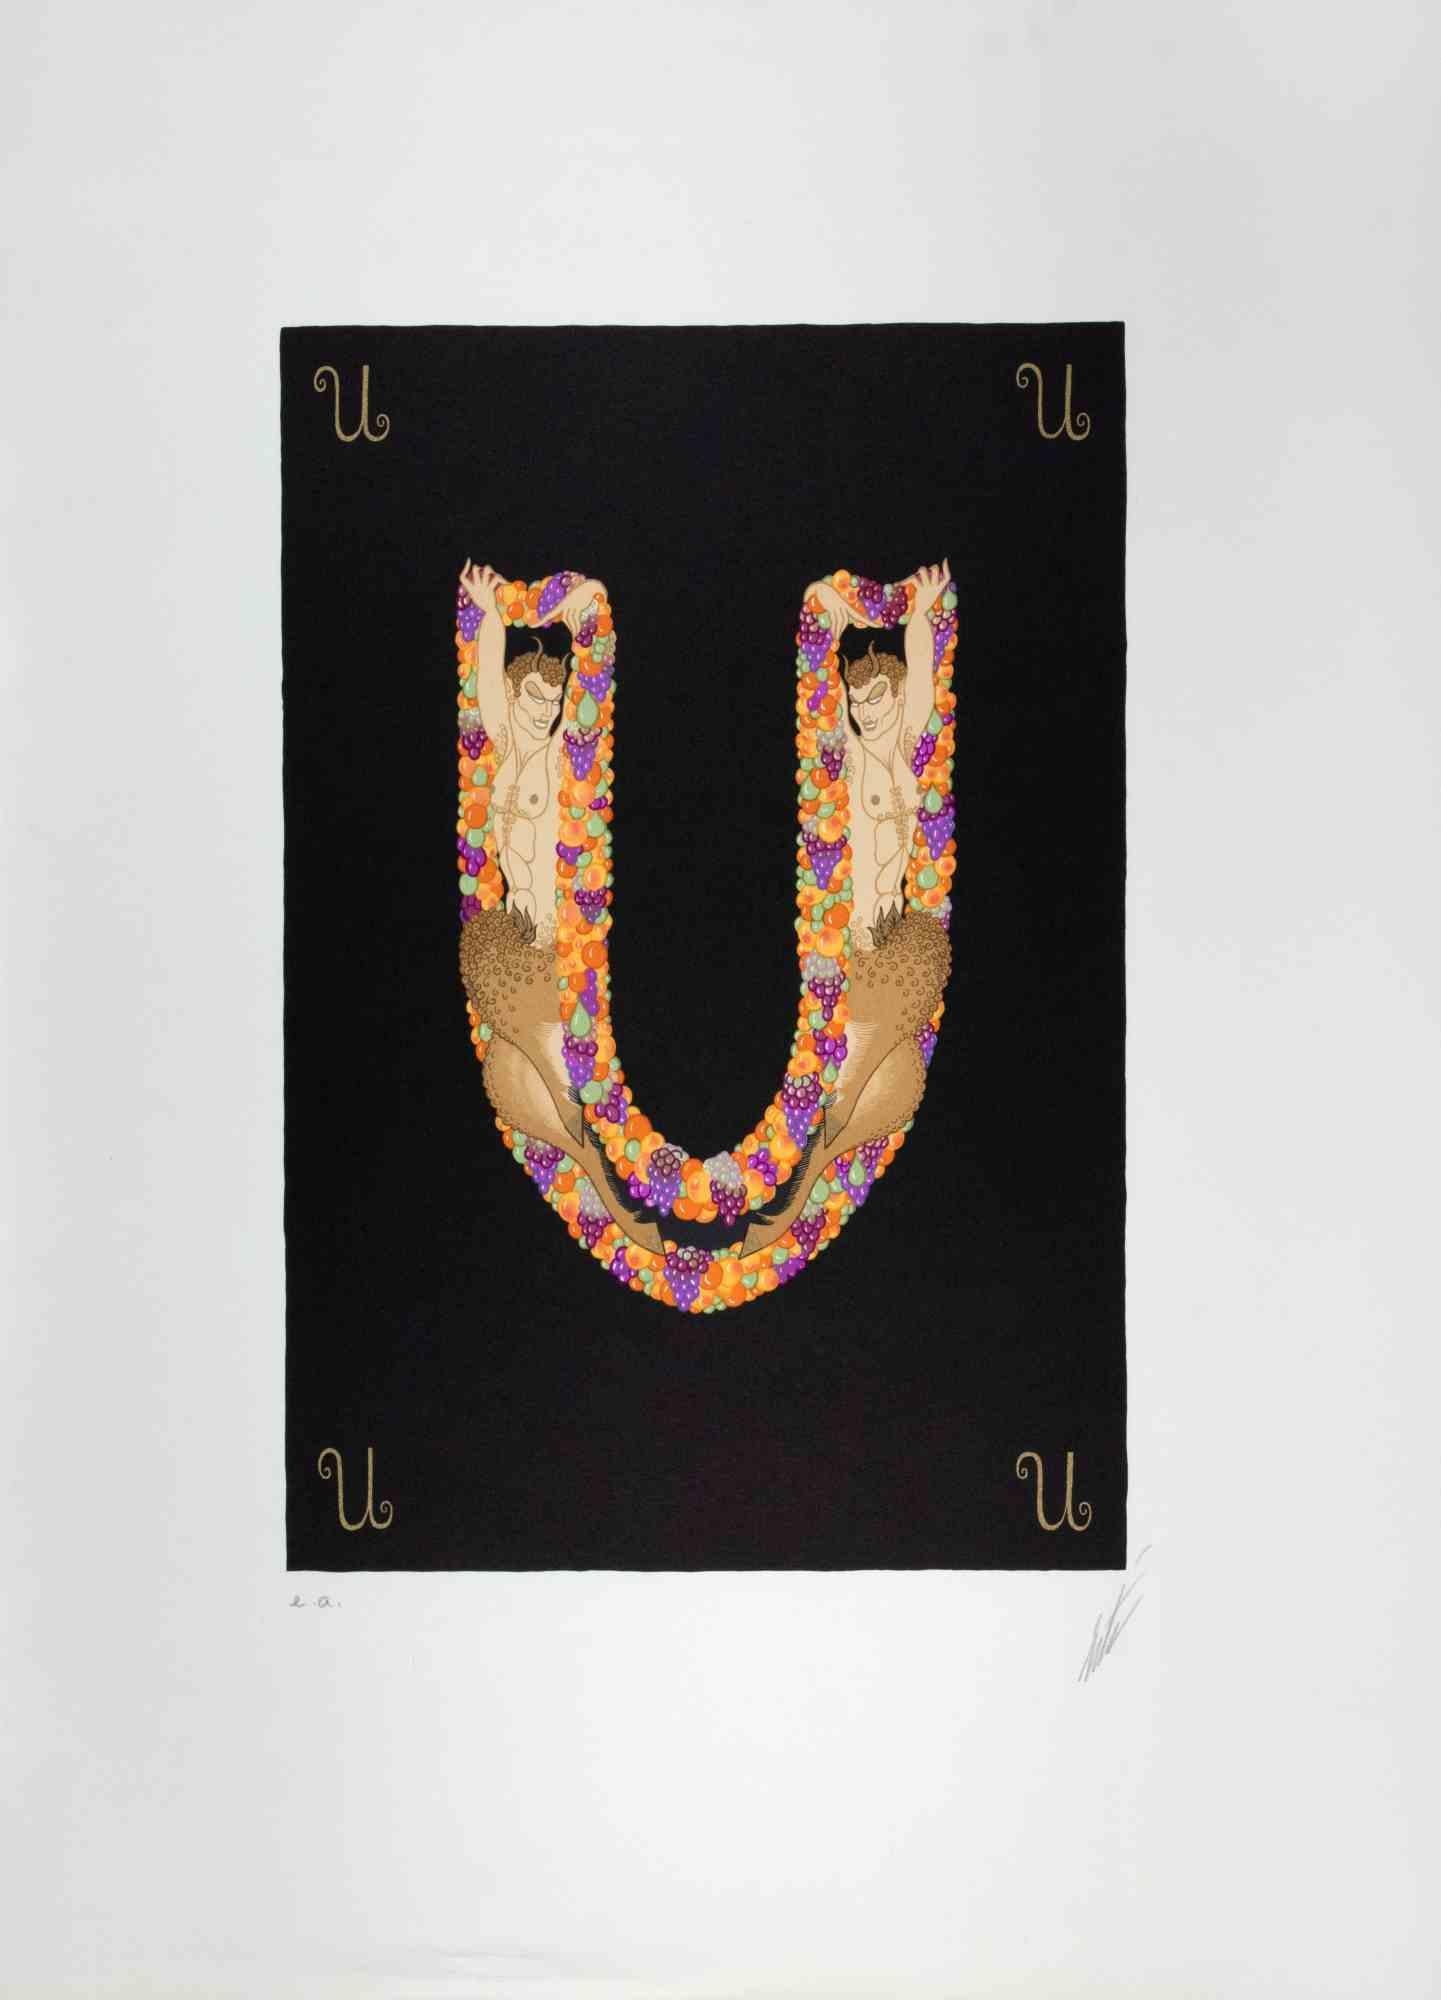 Buchstabe U - aus der Suite Letters of the Alphabet ist ein zeitgenössisches Kunstwerk von Erté (Romain de Tirtoff).

Lithographie und Siebdruck.

Das Kunstwerk stammt aus der Suite "Letters of the Alphabet", 1976.

Handsigniert am unteren Rand.